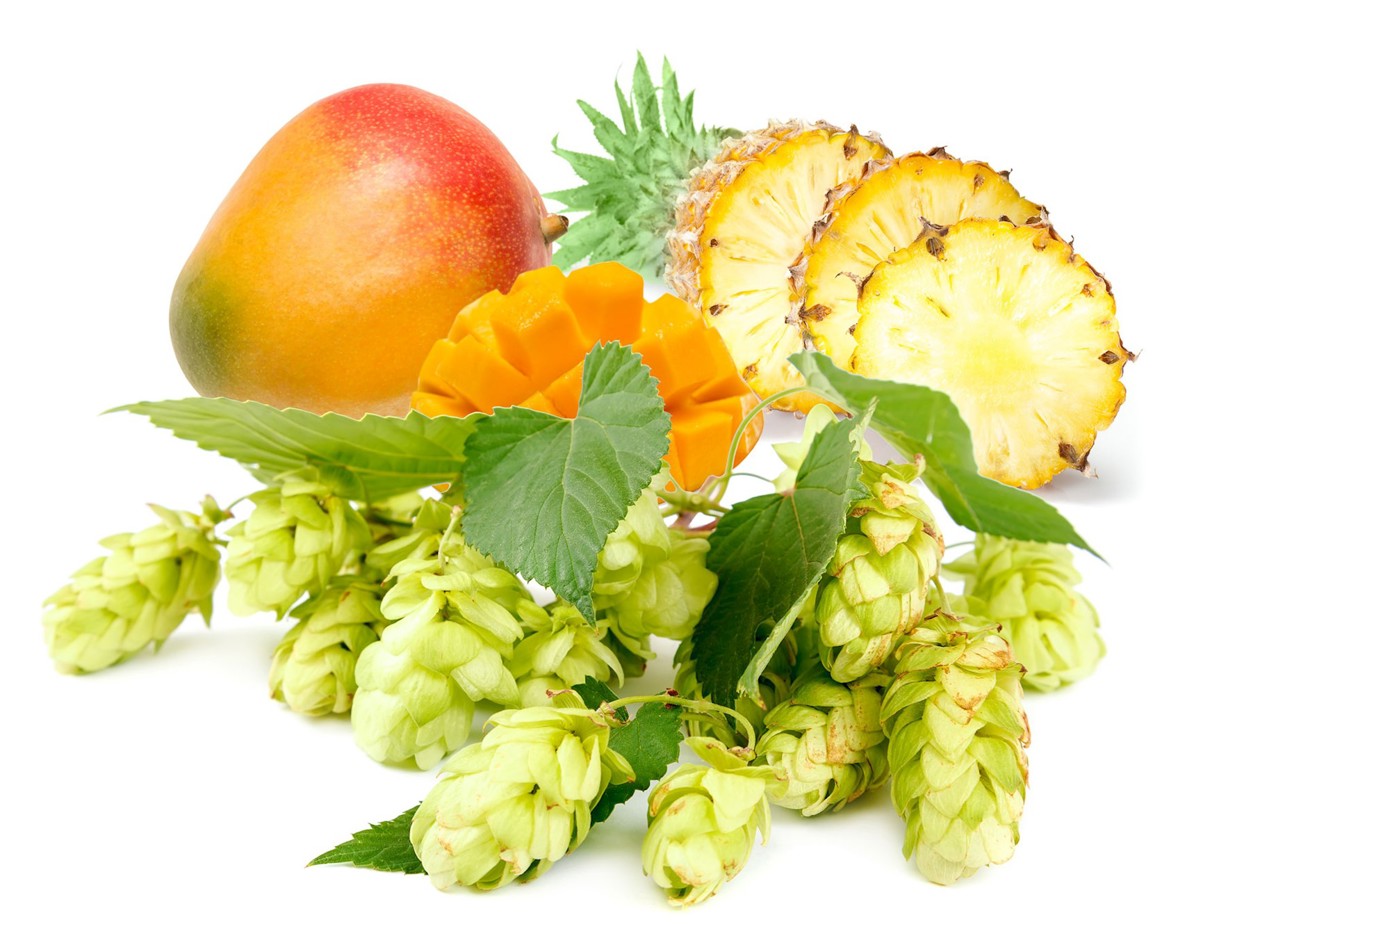 Humlebitterhet sammen med frisk aroma og smak fra tropiske frukter er en populær kombinasjon.